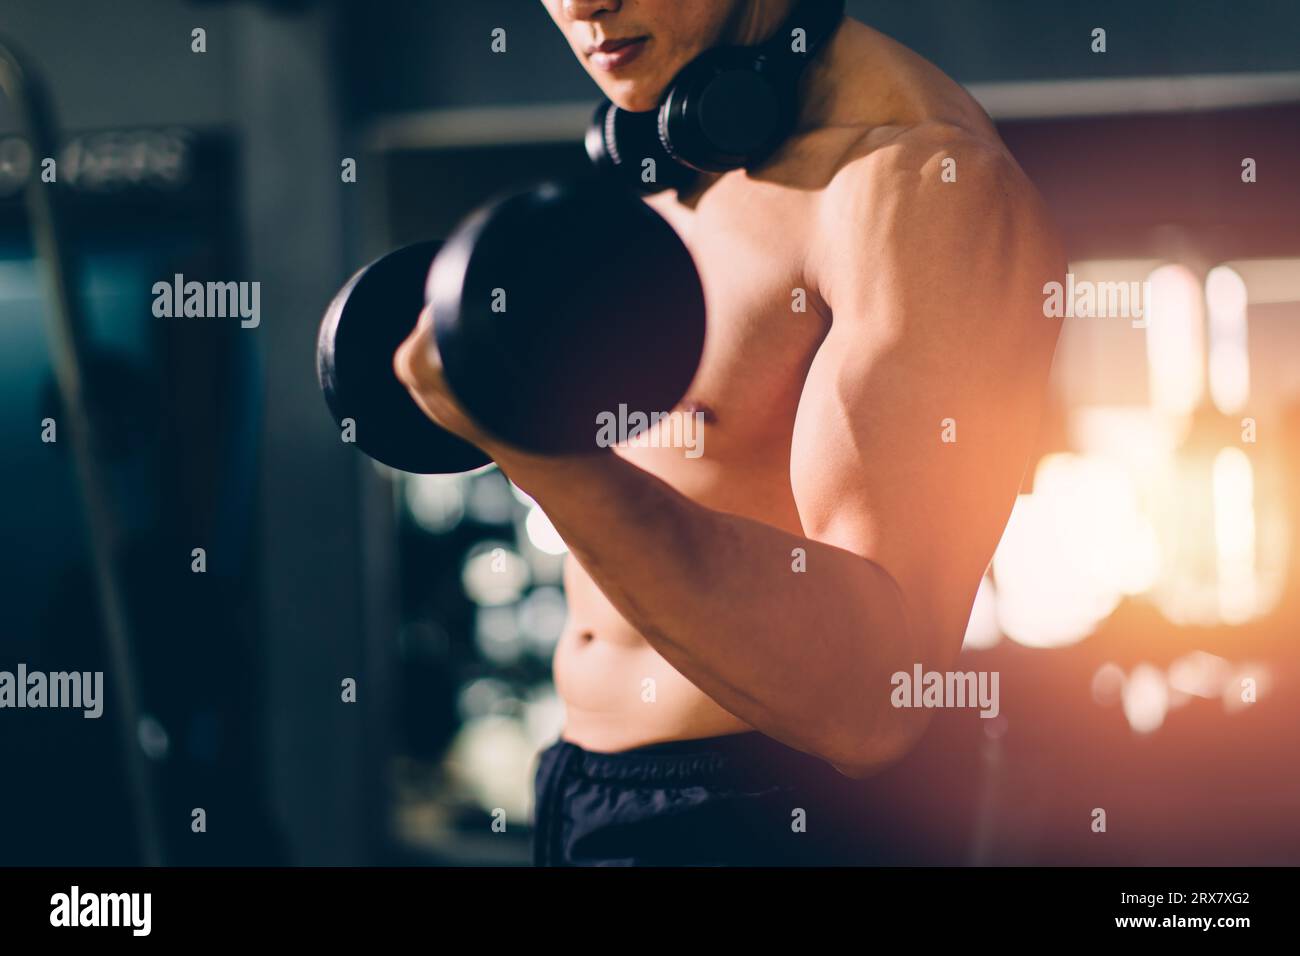 Sport bodybuilding masculin Belle poitrine parfaite de force musculaire de l'entraînement musculaire de base dans le club de sport de fitness gym Banque D'Images